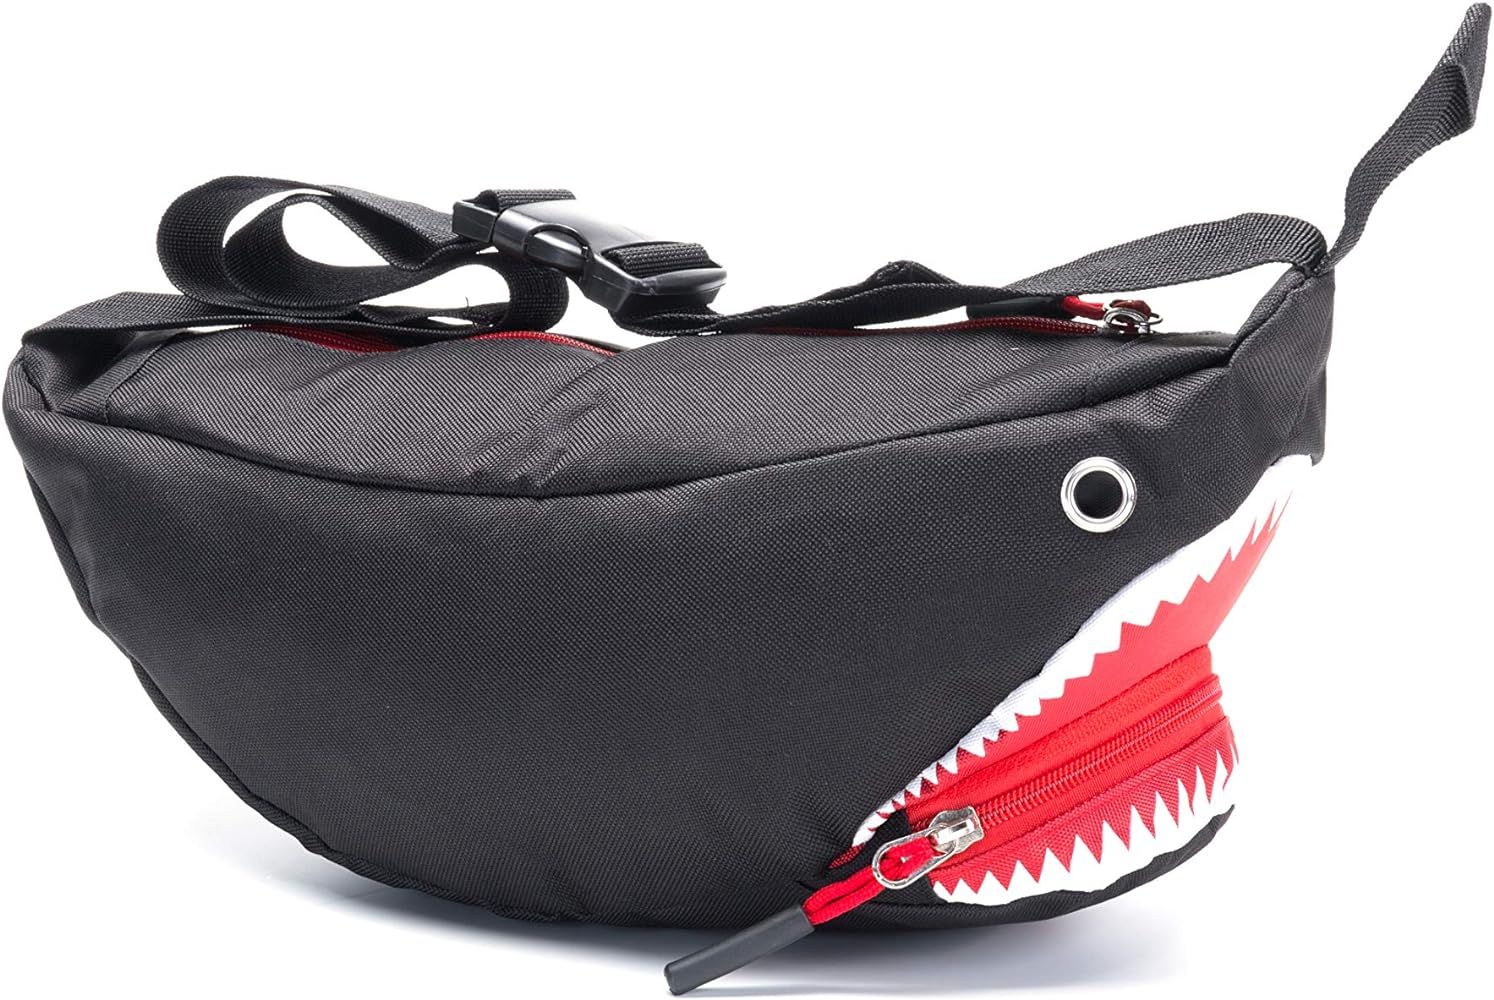 Shark Fanny Pack Cross Body Bag Wasit Pack Belt Bags for Men,Women,Kids Black shark | Amazon (US)